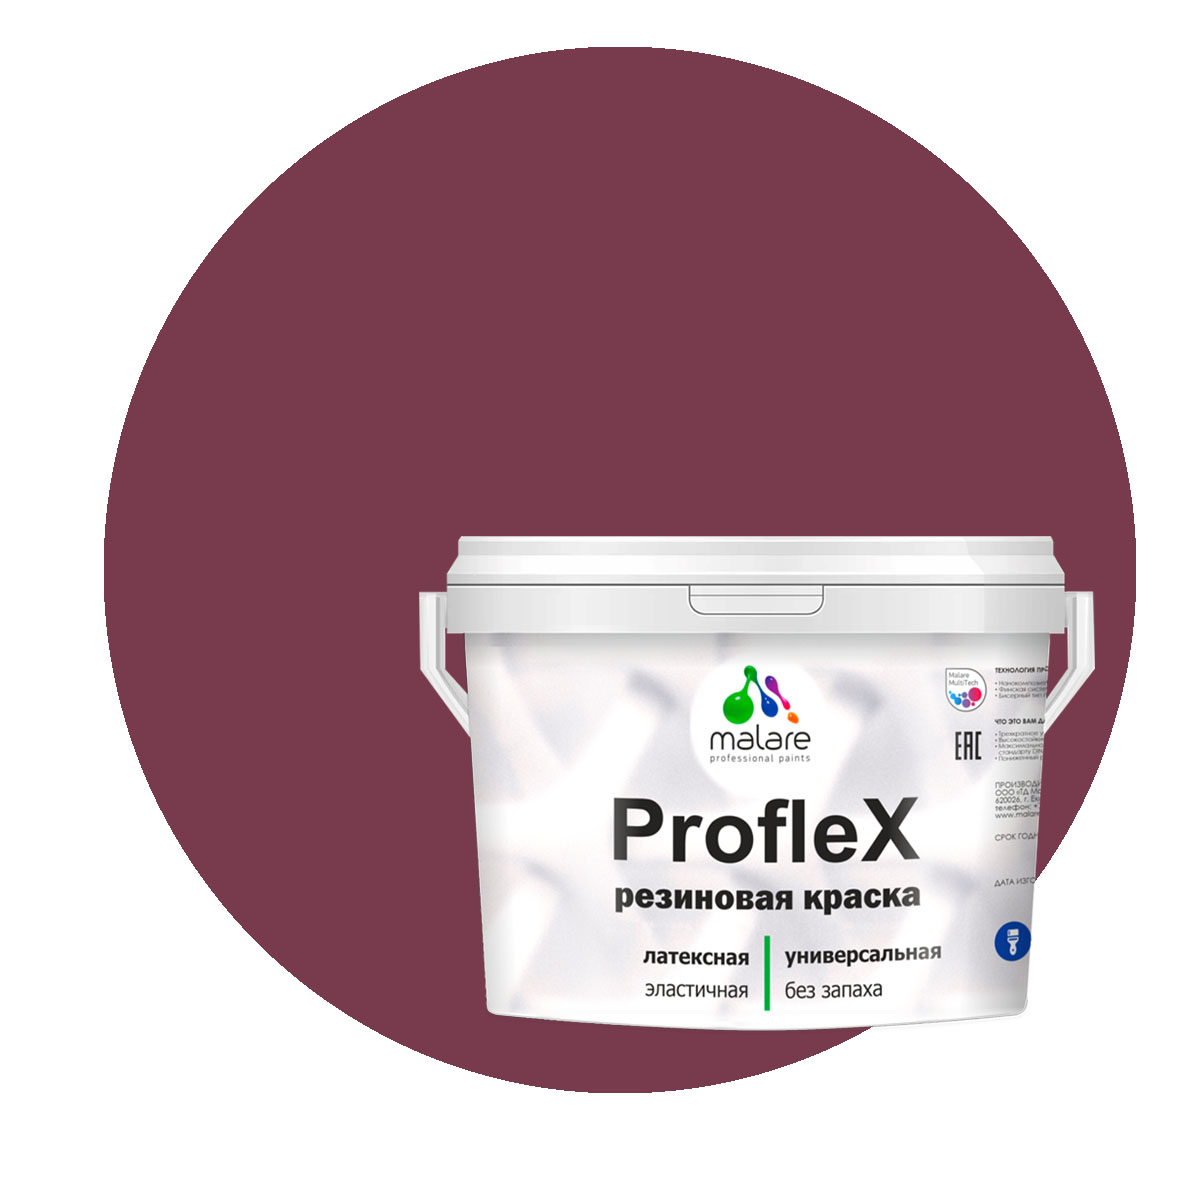 Краска Malare ProfleX для фасадов, интерьера, мебели, византия, 2 кг. щелочной очиститель фасадов зданий plex